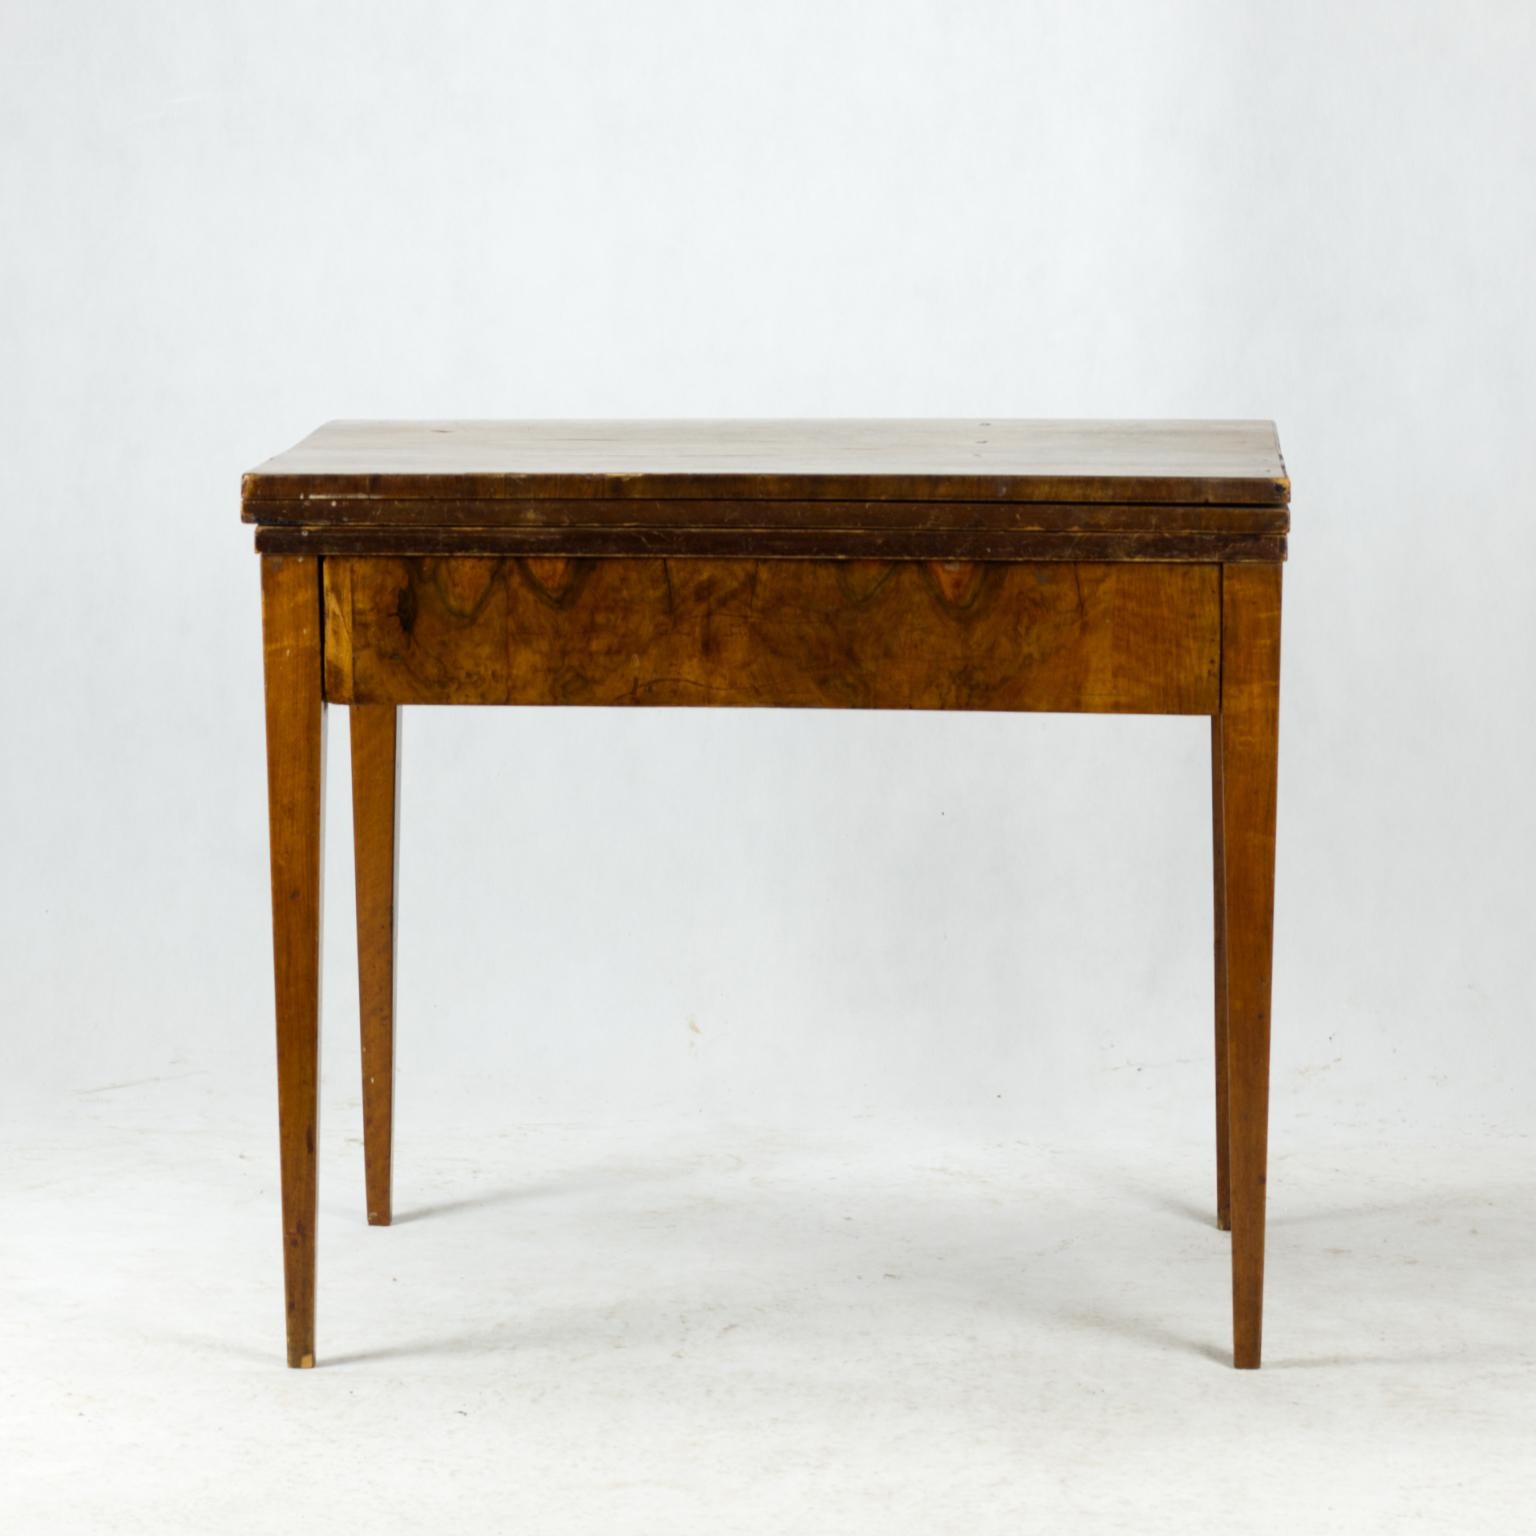 Der Tisch stammt aus dem frühen Biedermeier zu Beginn des 19. Jahrhunderts. Der Korpus des Tisches besteht aus Fichtenholz und wurde mit einem sehr schönen dicken Walnussfurnier überzogen. Der Tisch ist in gutem Zustand. Die Größe des ausgebreiteten